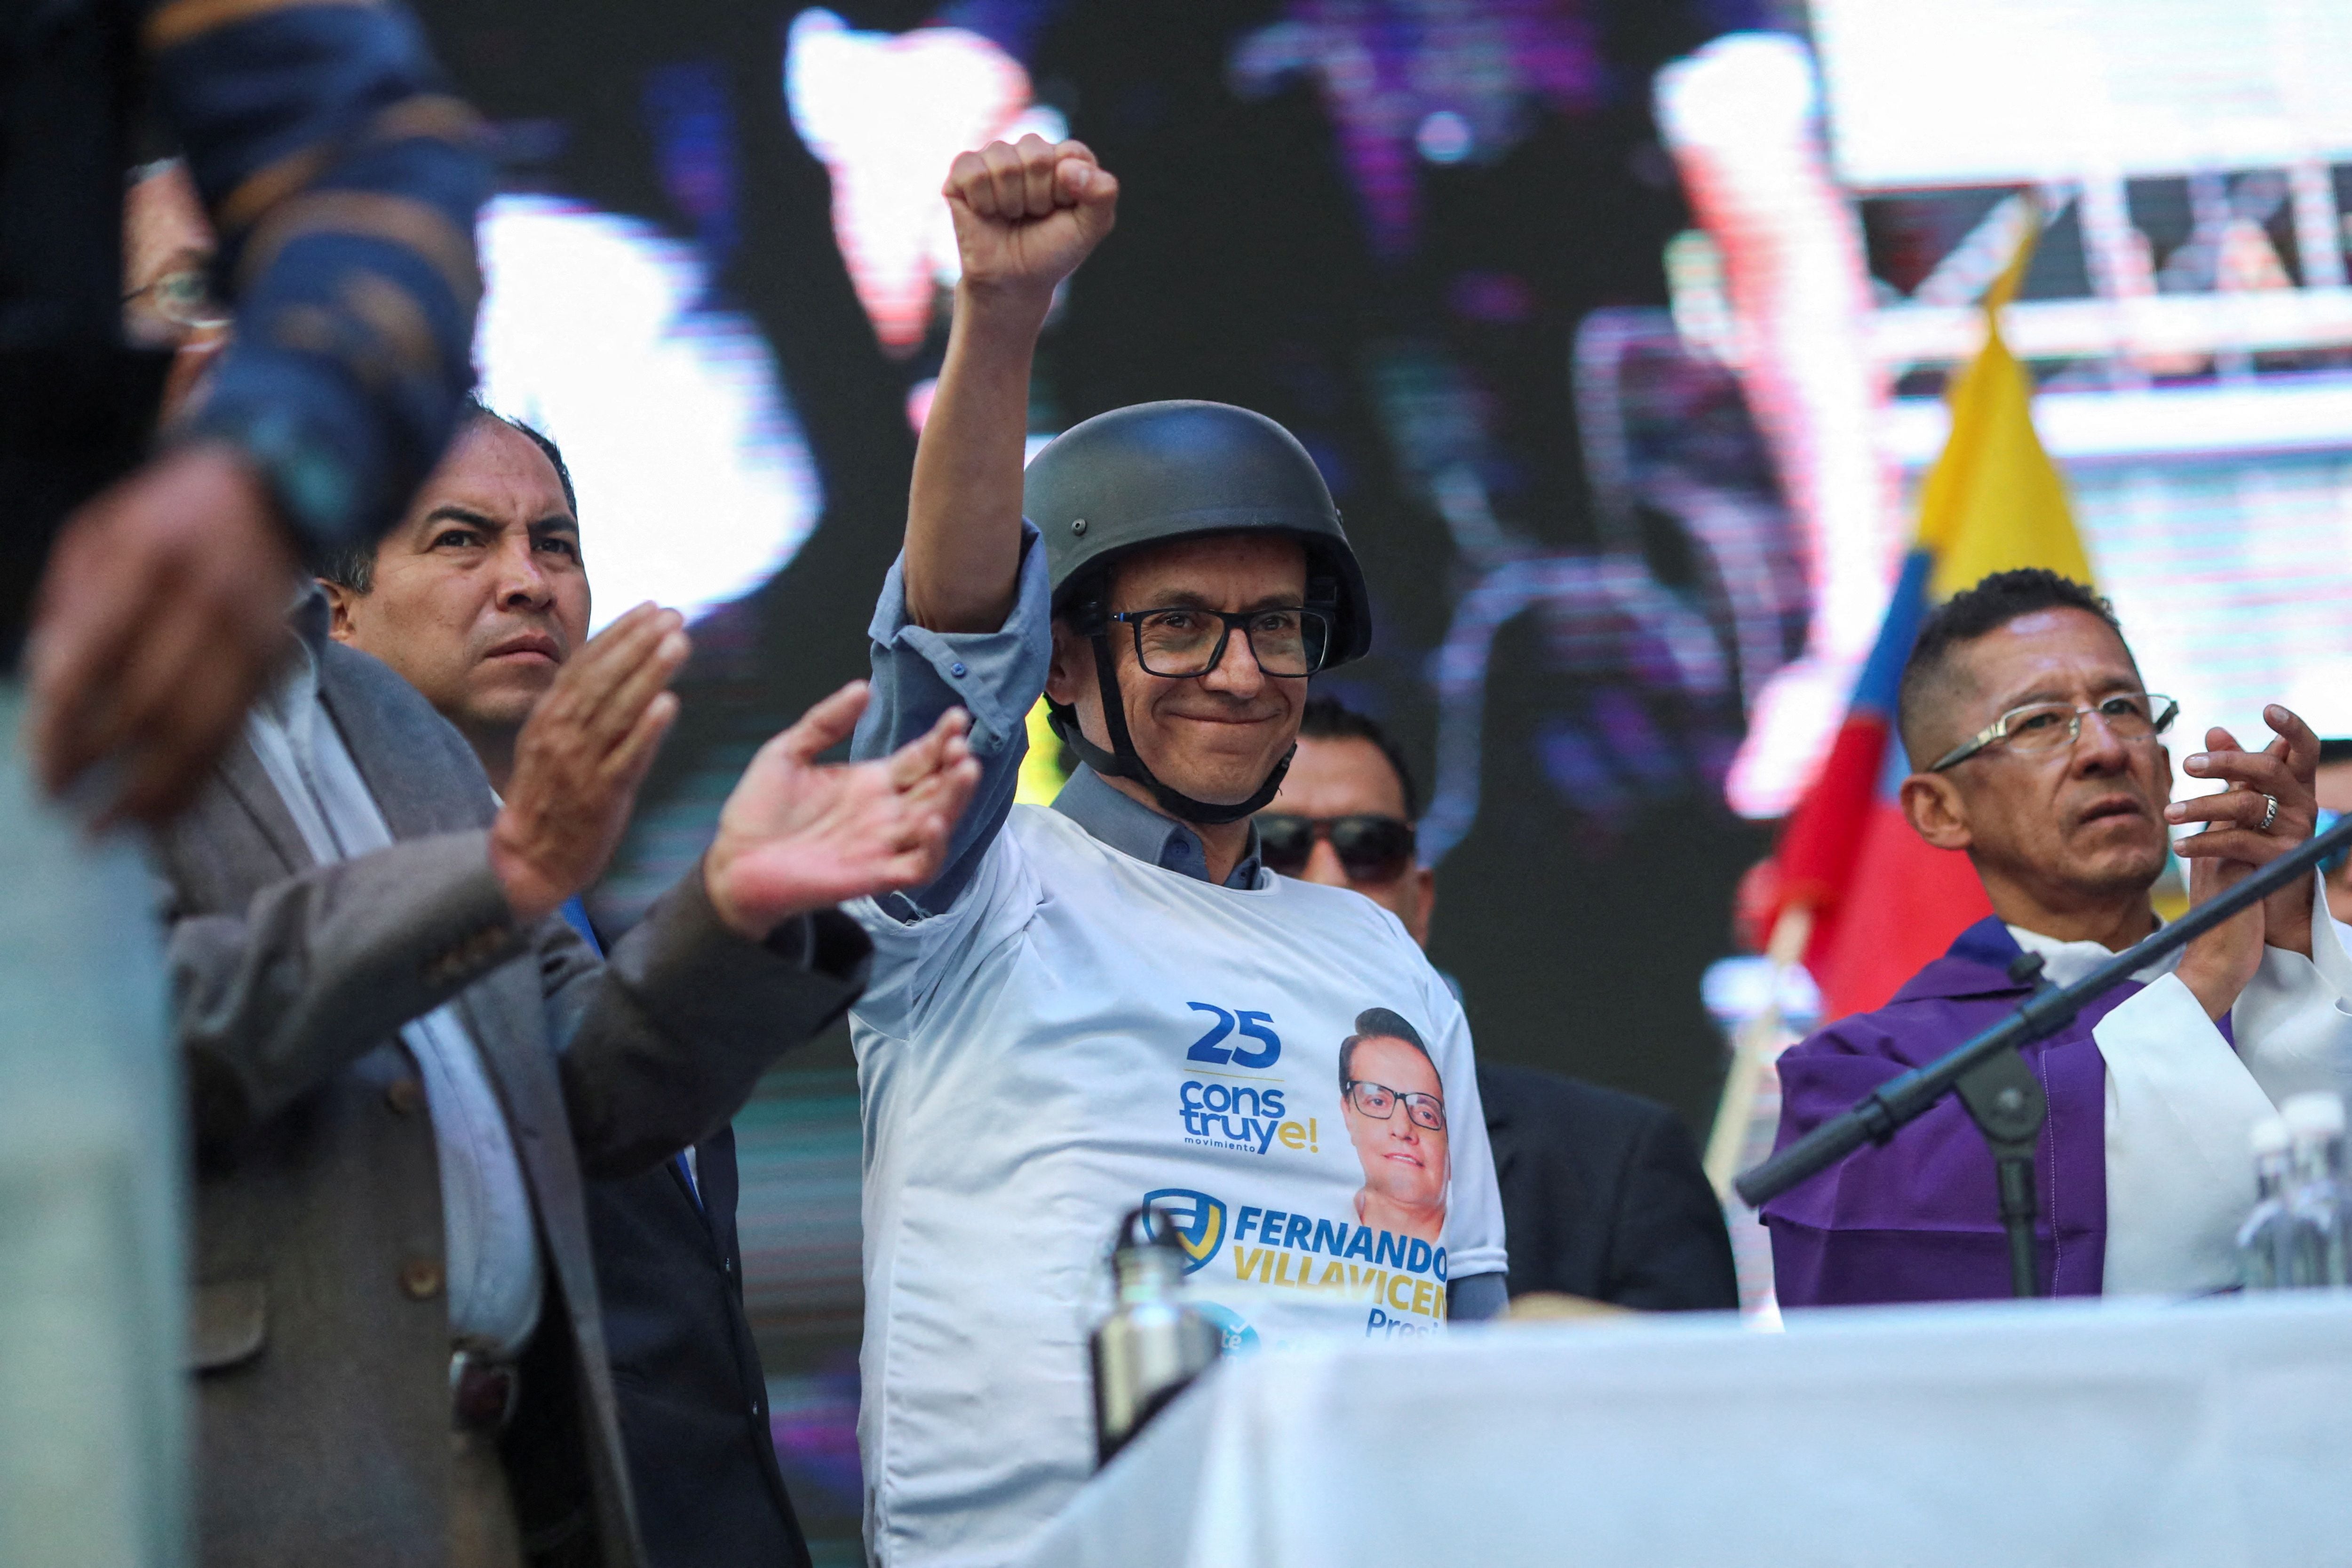 El candidato presidencial ecuatoriano Christian Zurita gesticula mientras lleva un casco balístico y una camiseta con la imagen del candidato presidencial asesinado Fernando Villavicencio (REUTERS/Henry Romero)